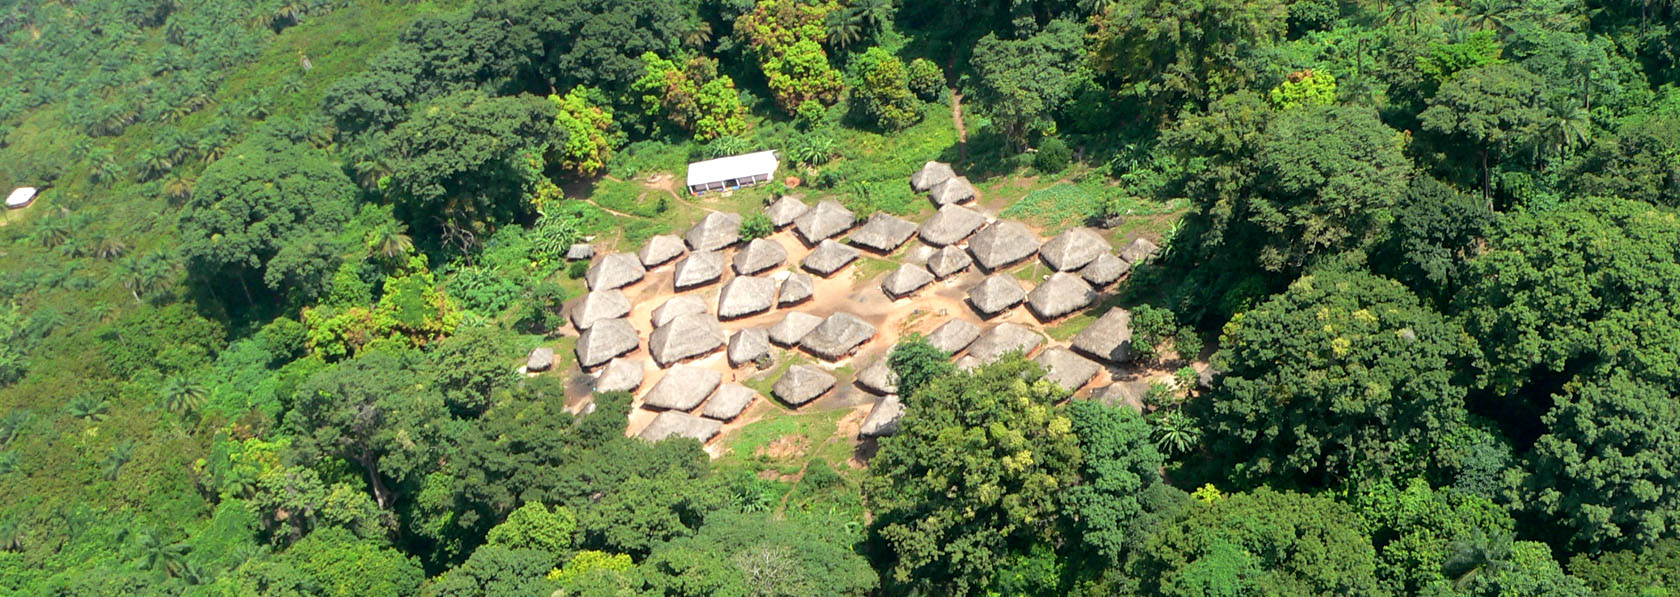 A aldeia de Binte e a sua escola vistas do céu, ao noroeste do Arquipélago dos Bijagós